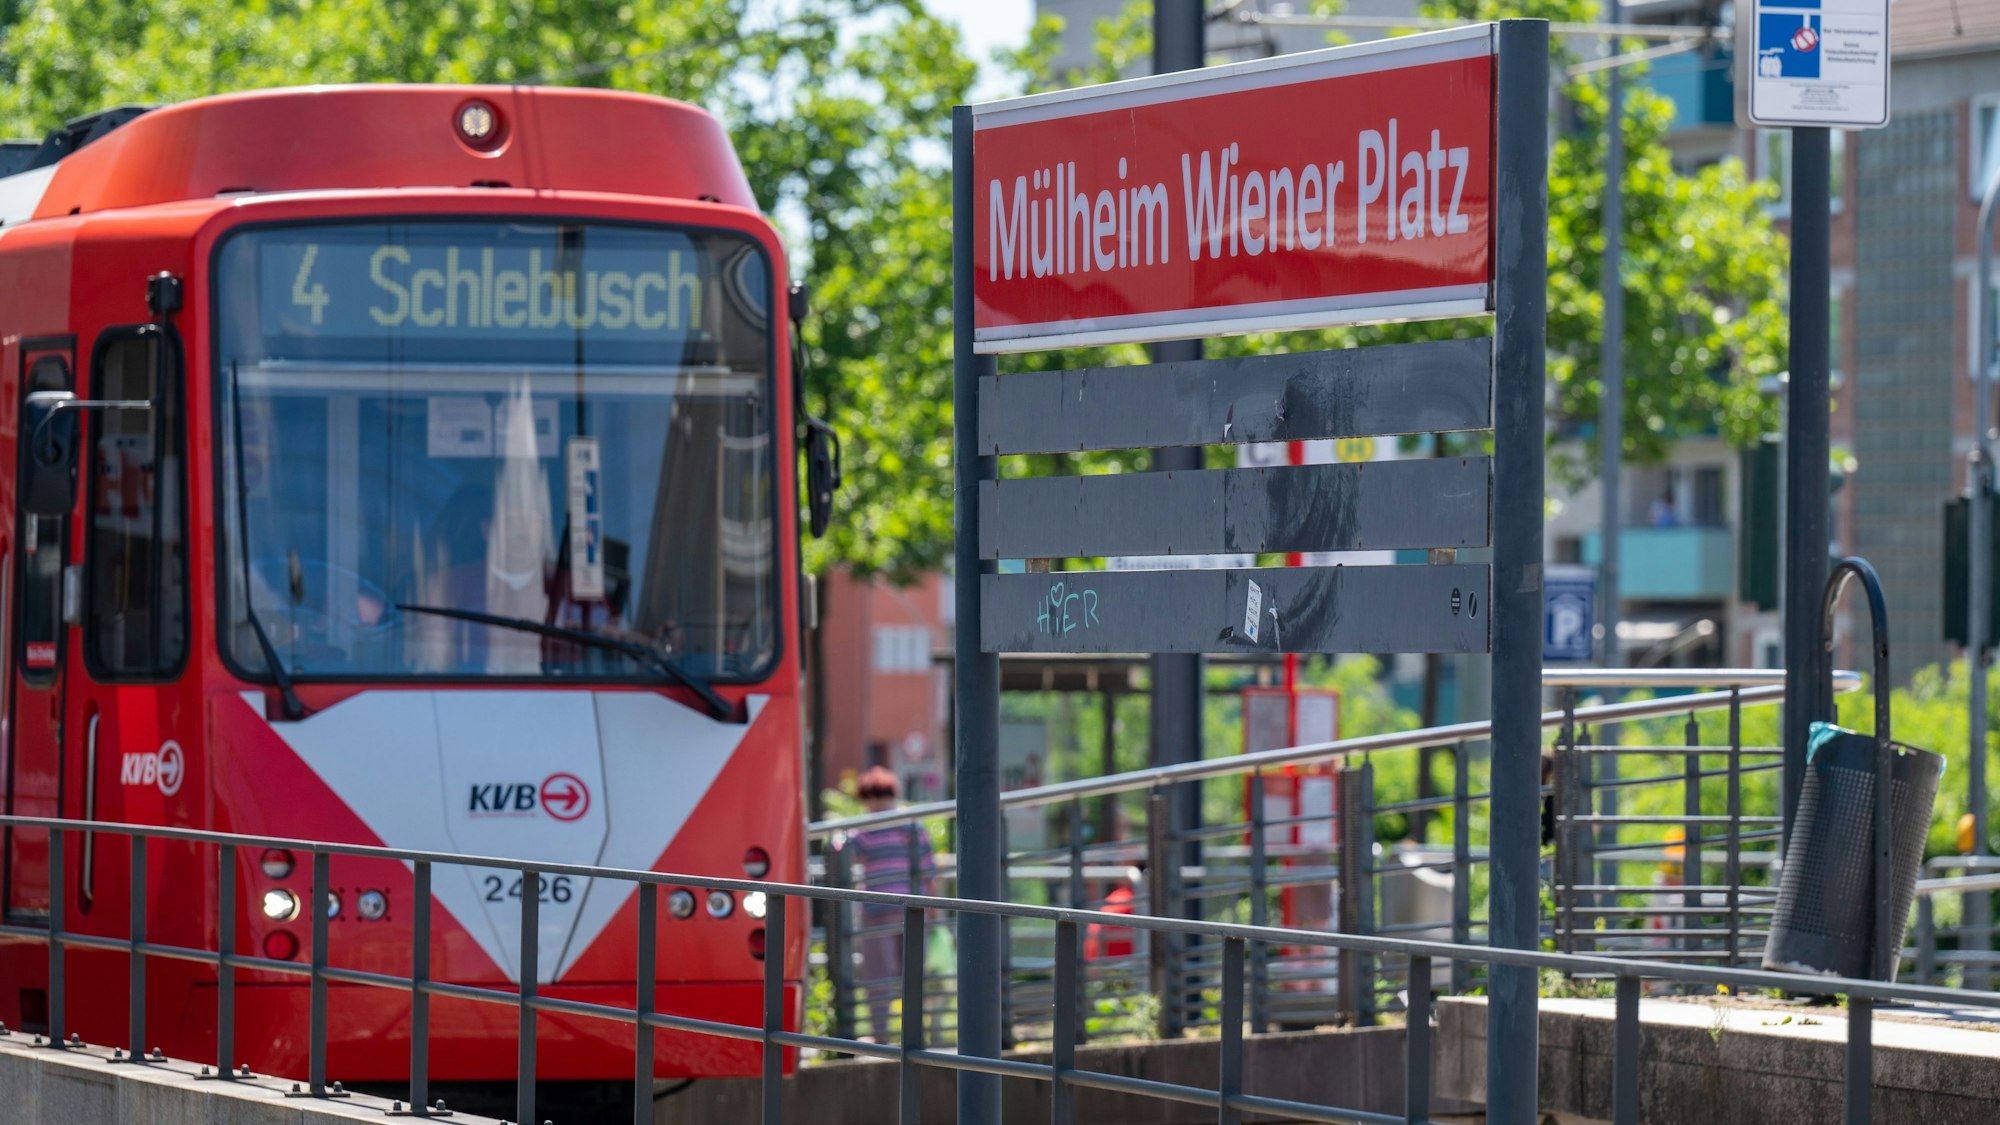 Die Stadtbahnlinie 4 in Fahrtrichtung Schlebusch an der Haltestelle Mülheim Wiener Platz.